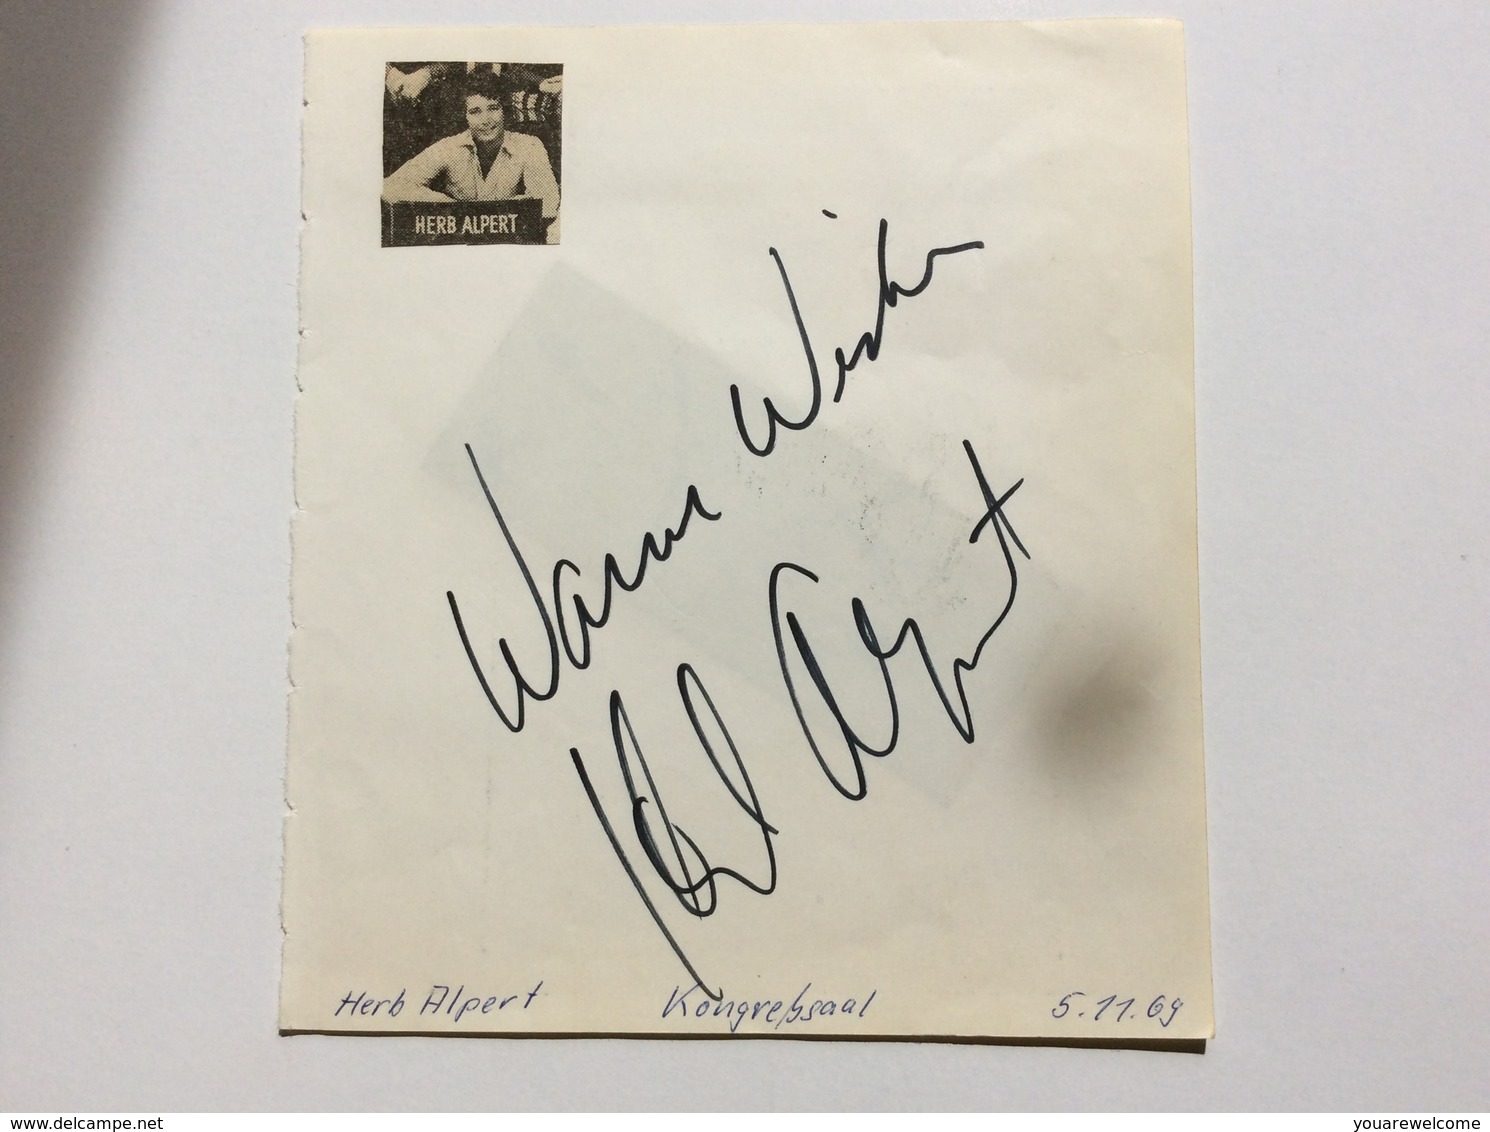 HERB ALBERT & THE TIHUANA BRASS Band Autograph München Concert Nov 1969 (music Memorabilia Autographe Musique - Autogramme